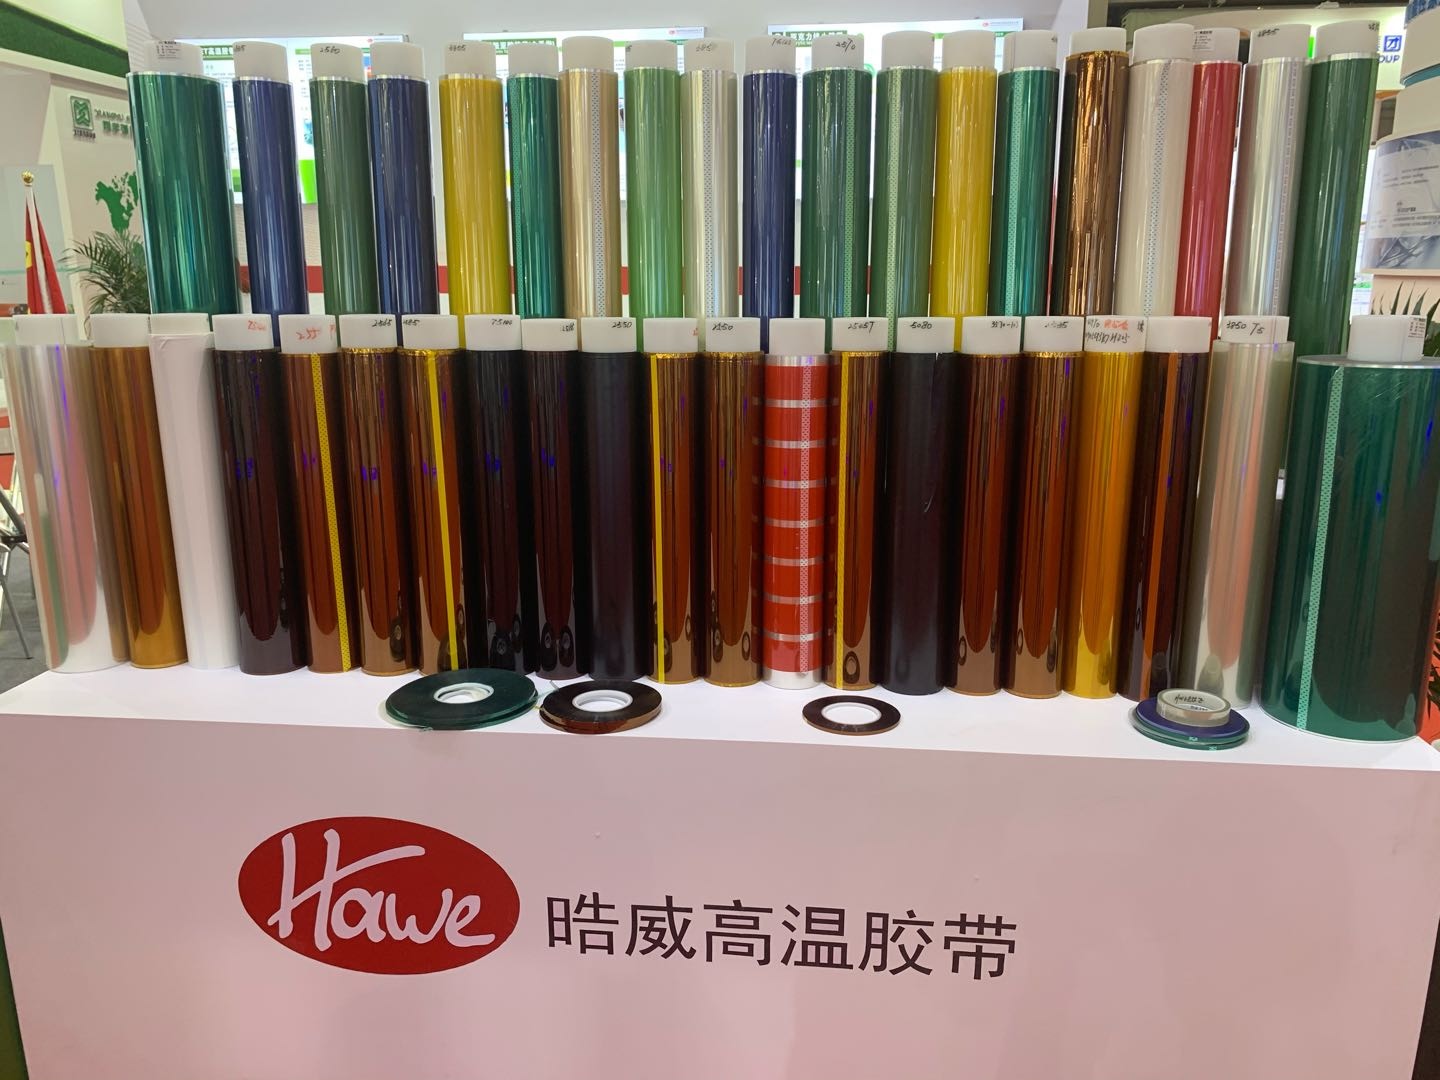 深圳市晧威胶粘制品有限公司